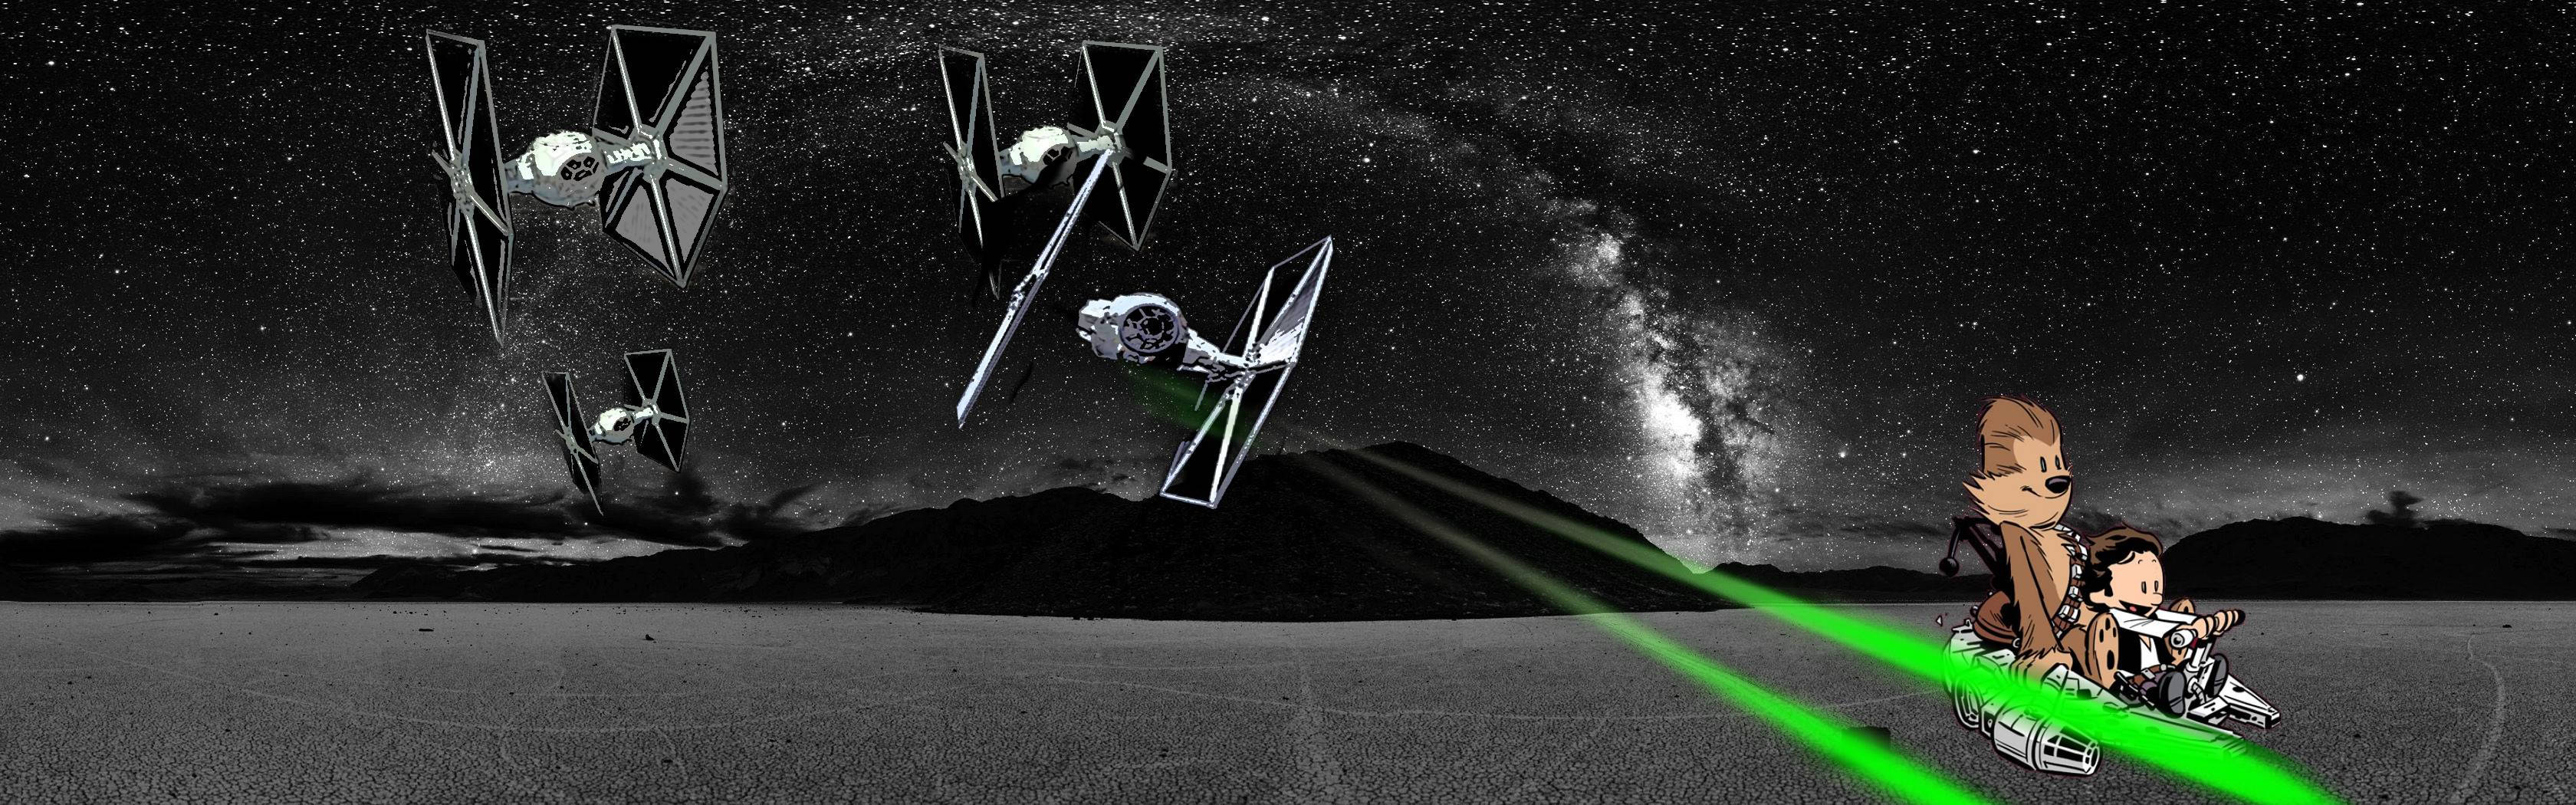 Star Wars Zweiseitiger Bildschirm Calvin Und Hobbes Wallpaper